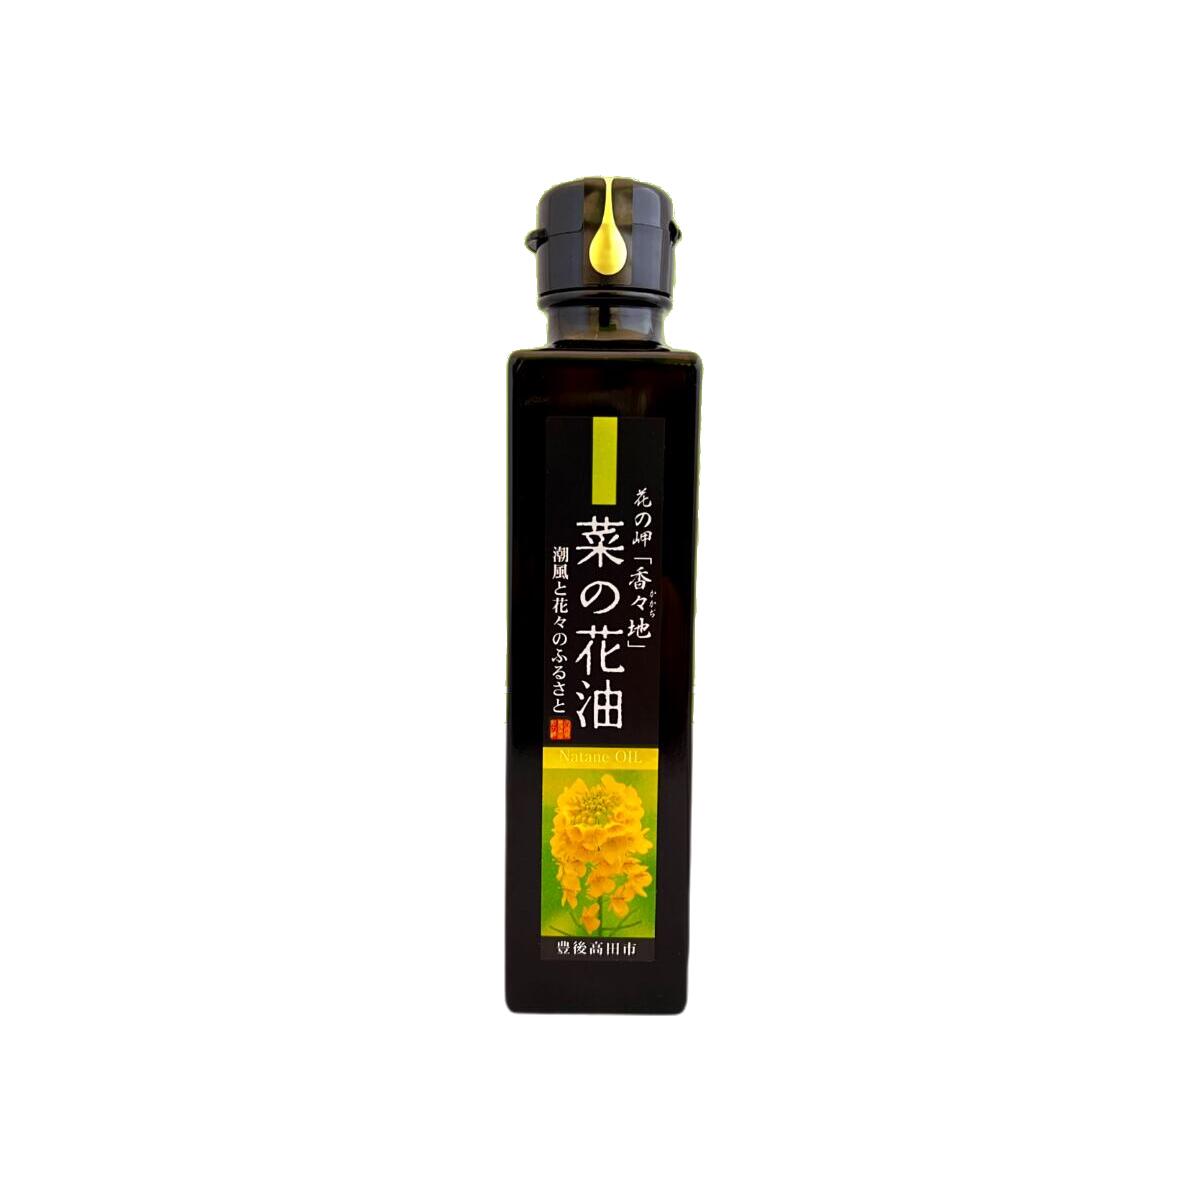  Ԃ̖uXnv ؂̉Ԗ 138g   Y ԍ Ѝ͔| g Y ؎ rapeseed oil 啪